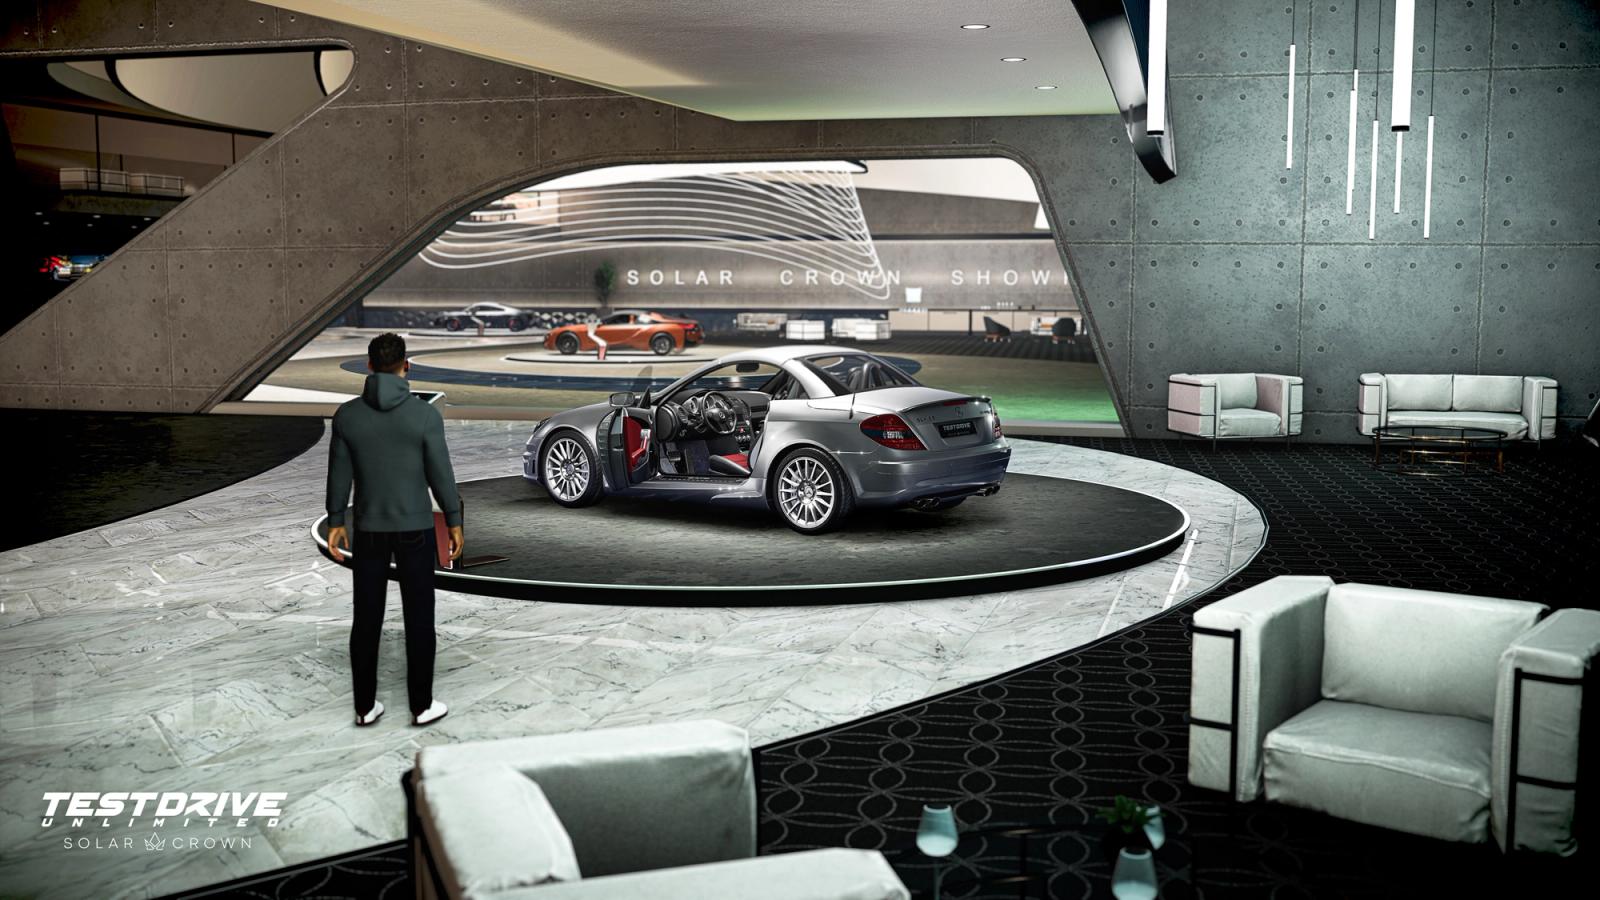 Test Drive Unlimited Solar Crown dealership Mercedes-AMG SLK